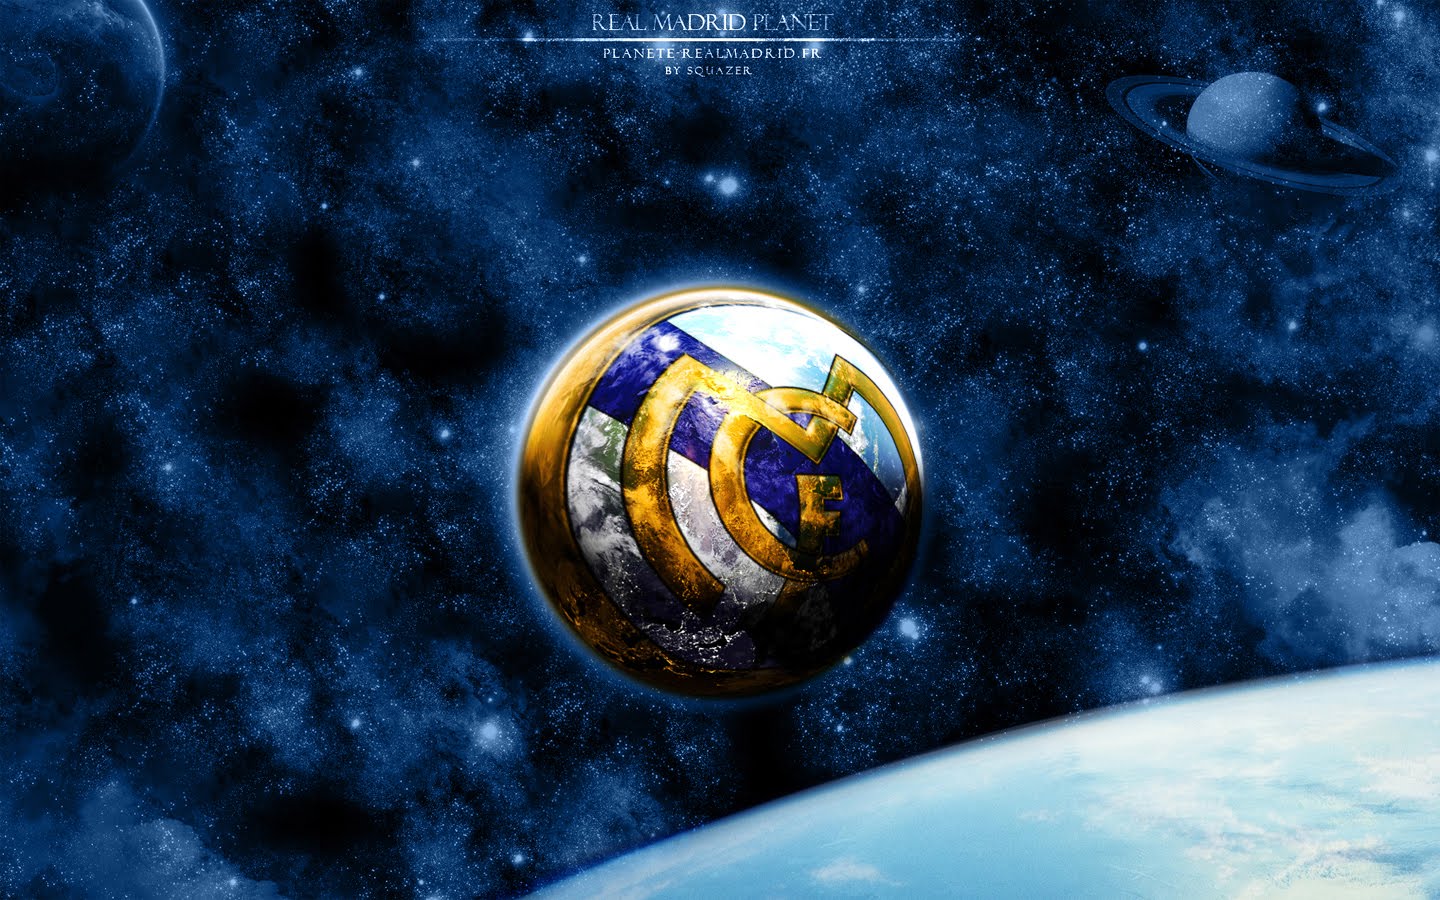 Real Madrid Logo Wallpaper 2015 WallpaperSafari